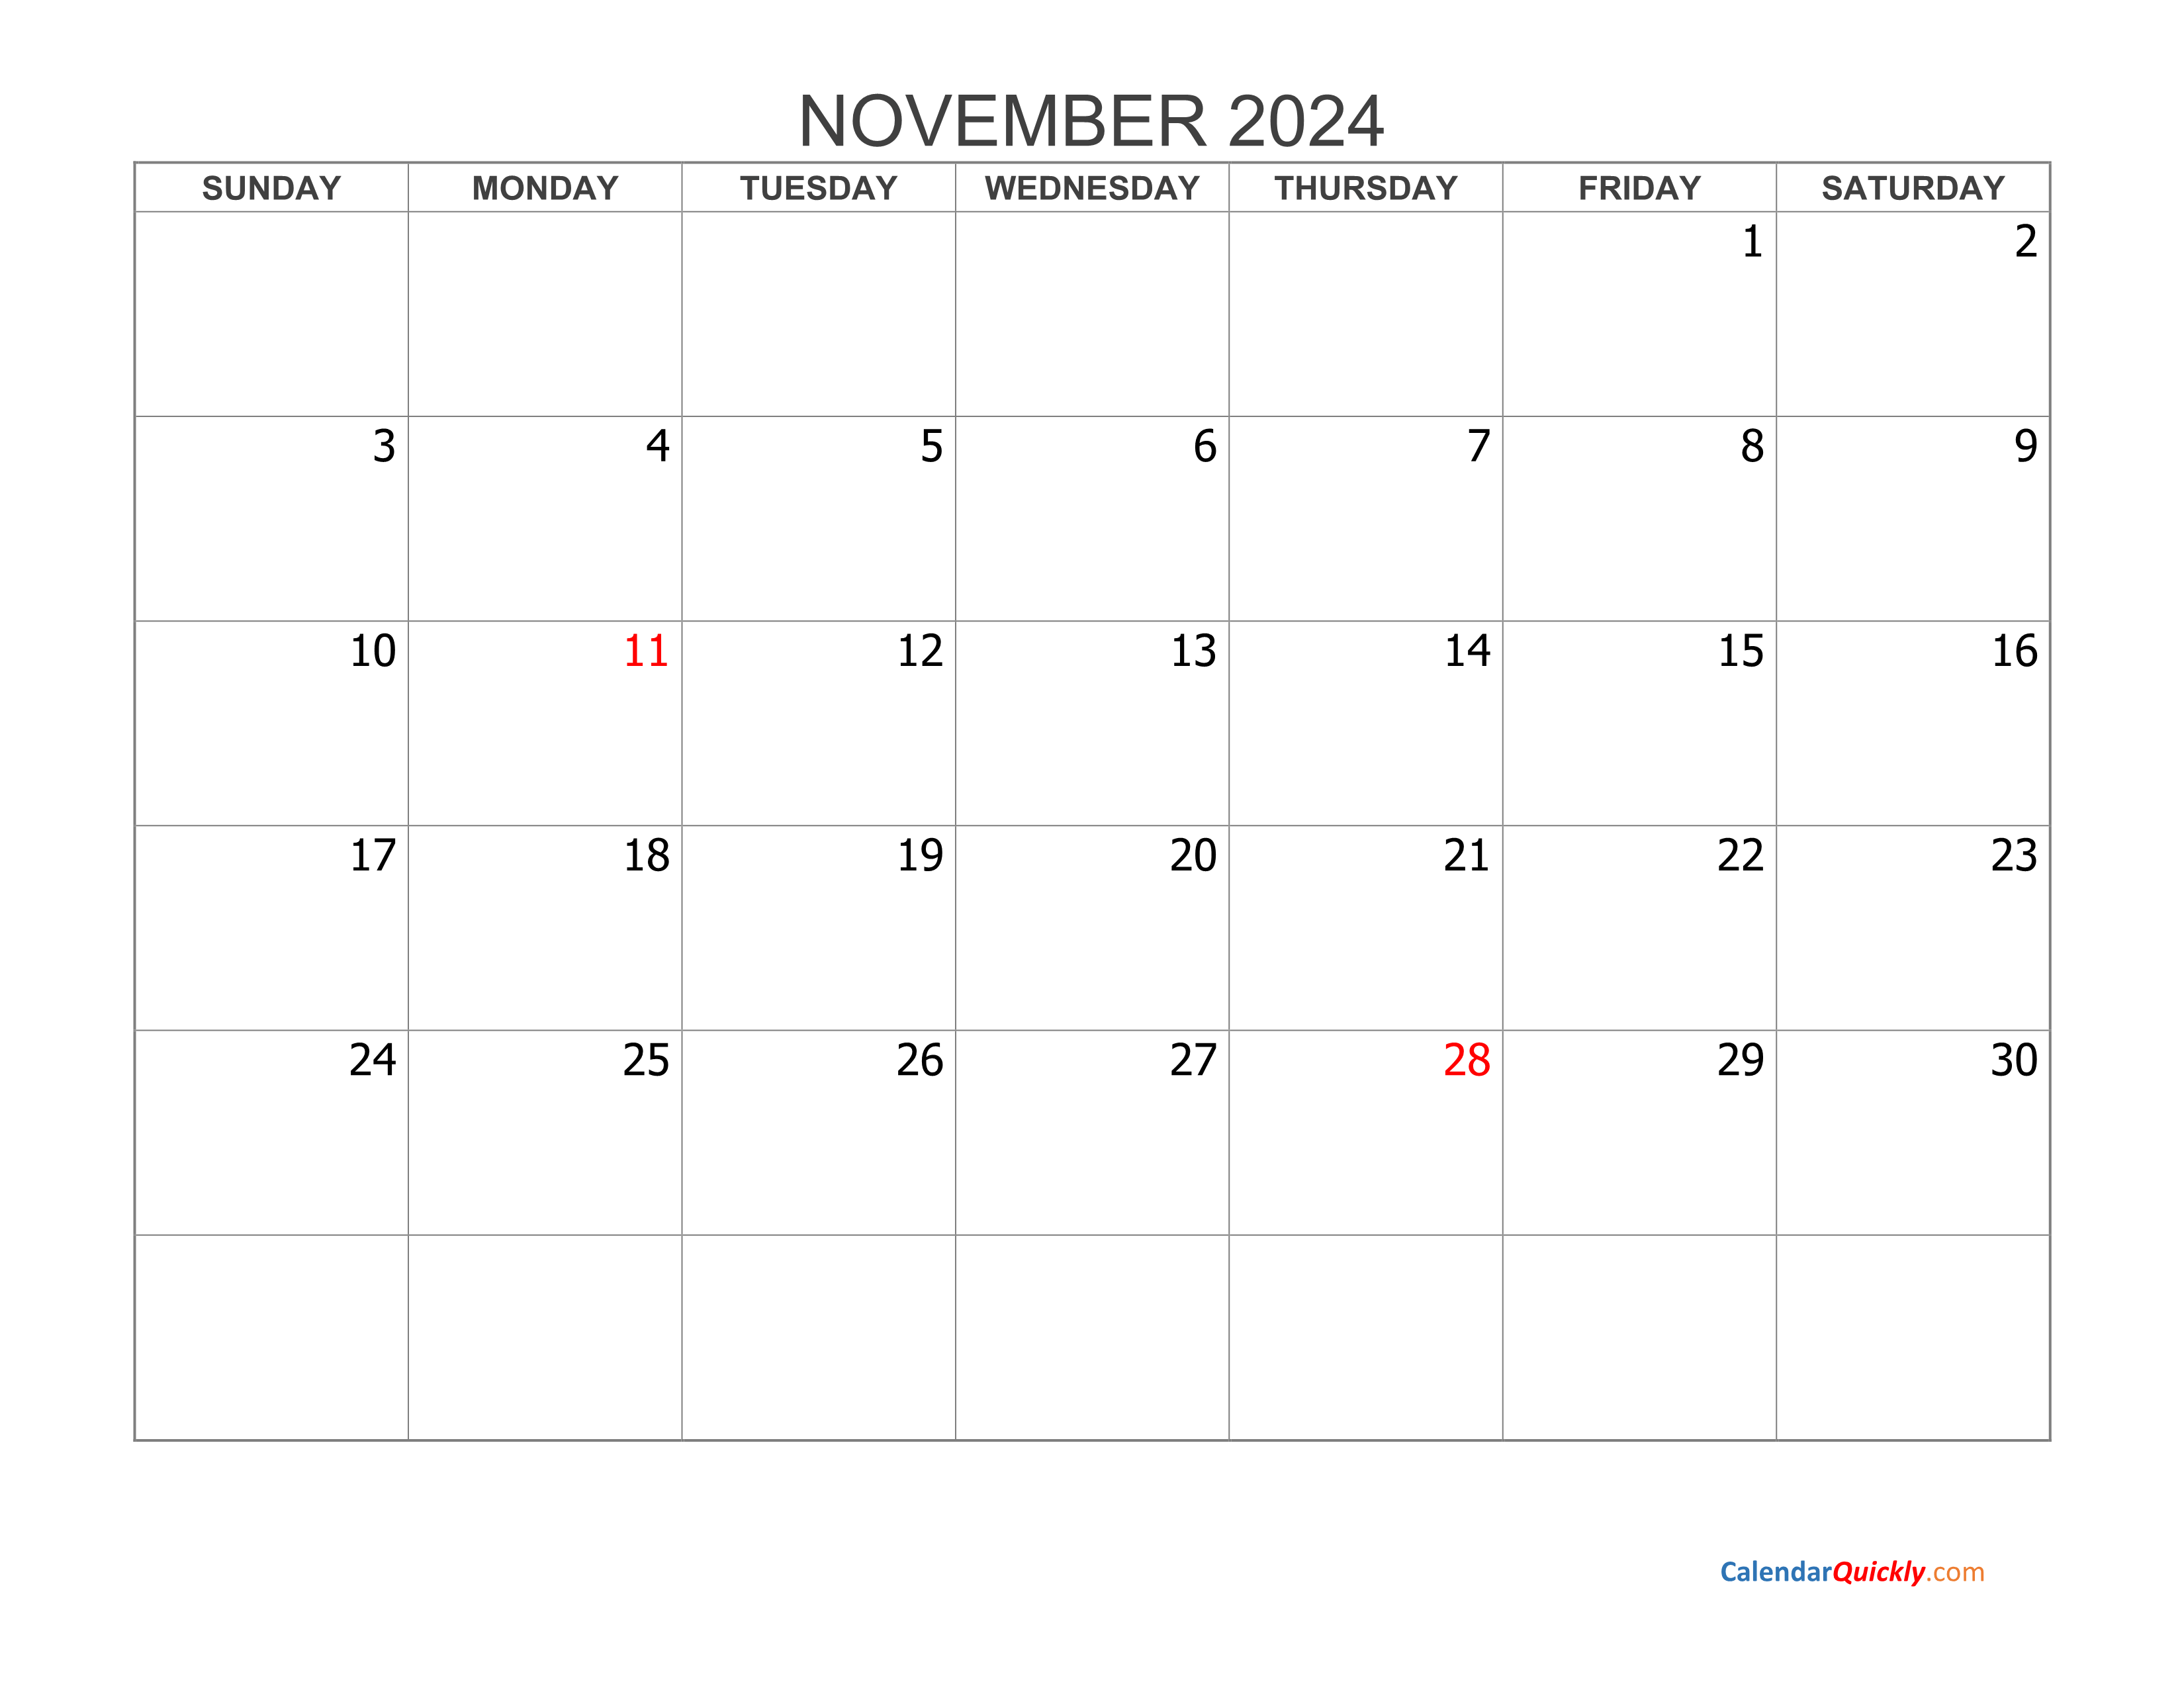 November 2024 Blank Calendar Calendar Quickly